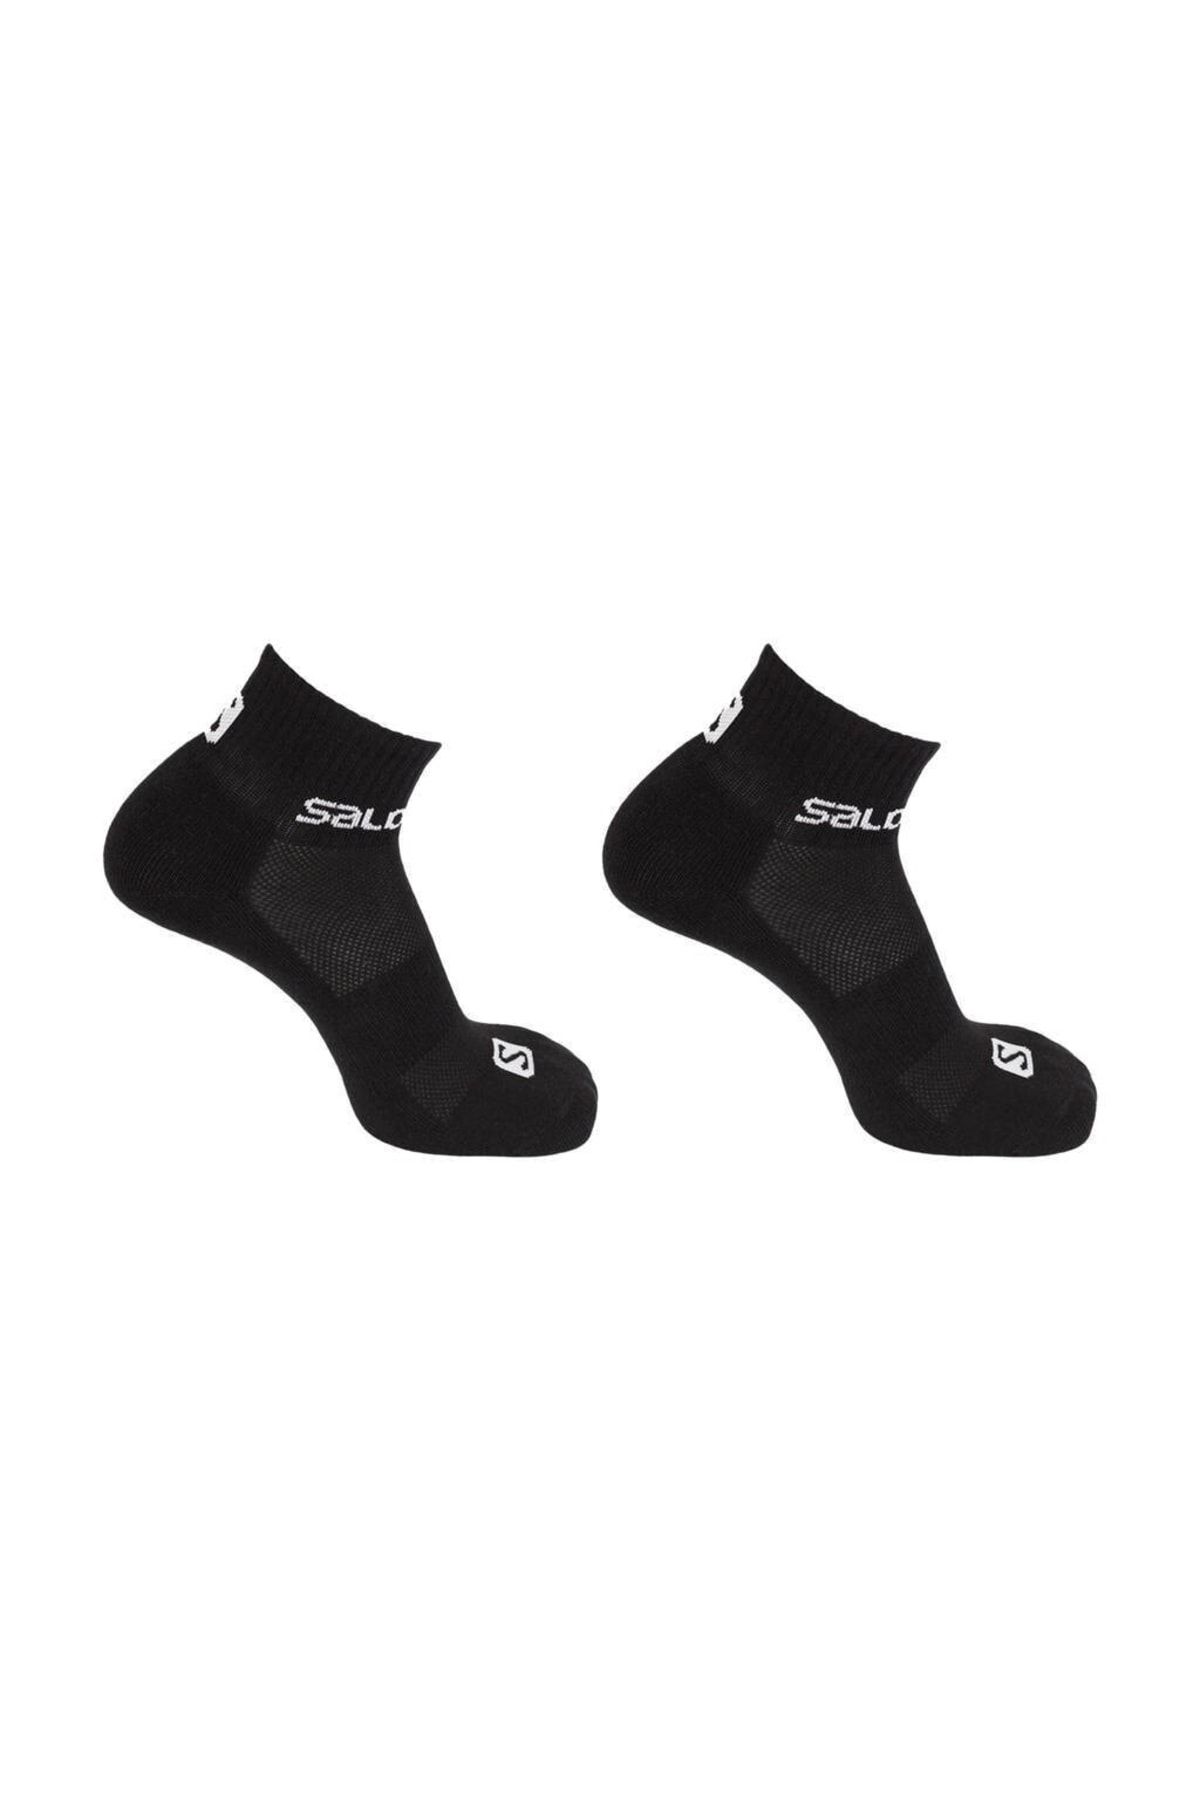 Salomon Lc1335000 Evasion 2-pack Çorap Siyah Unisex Çorap